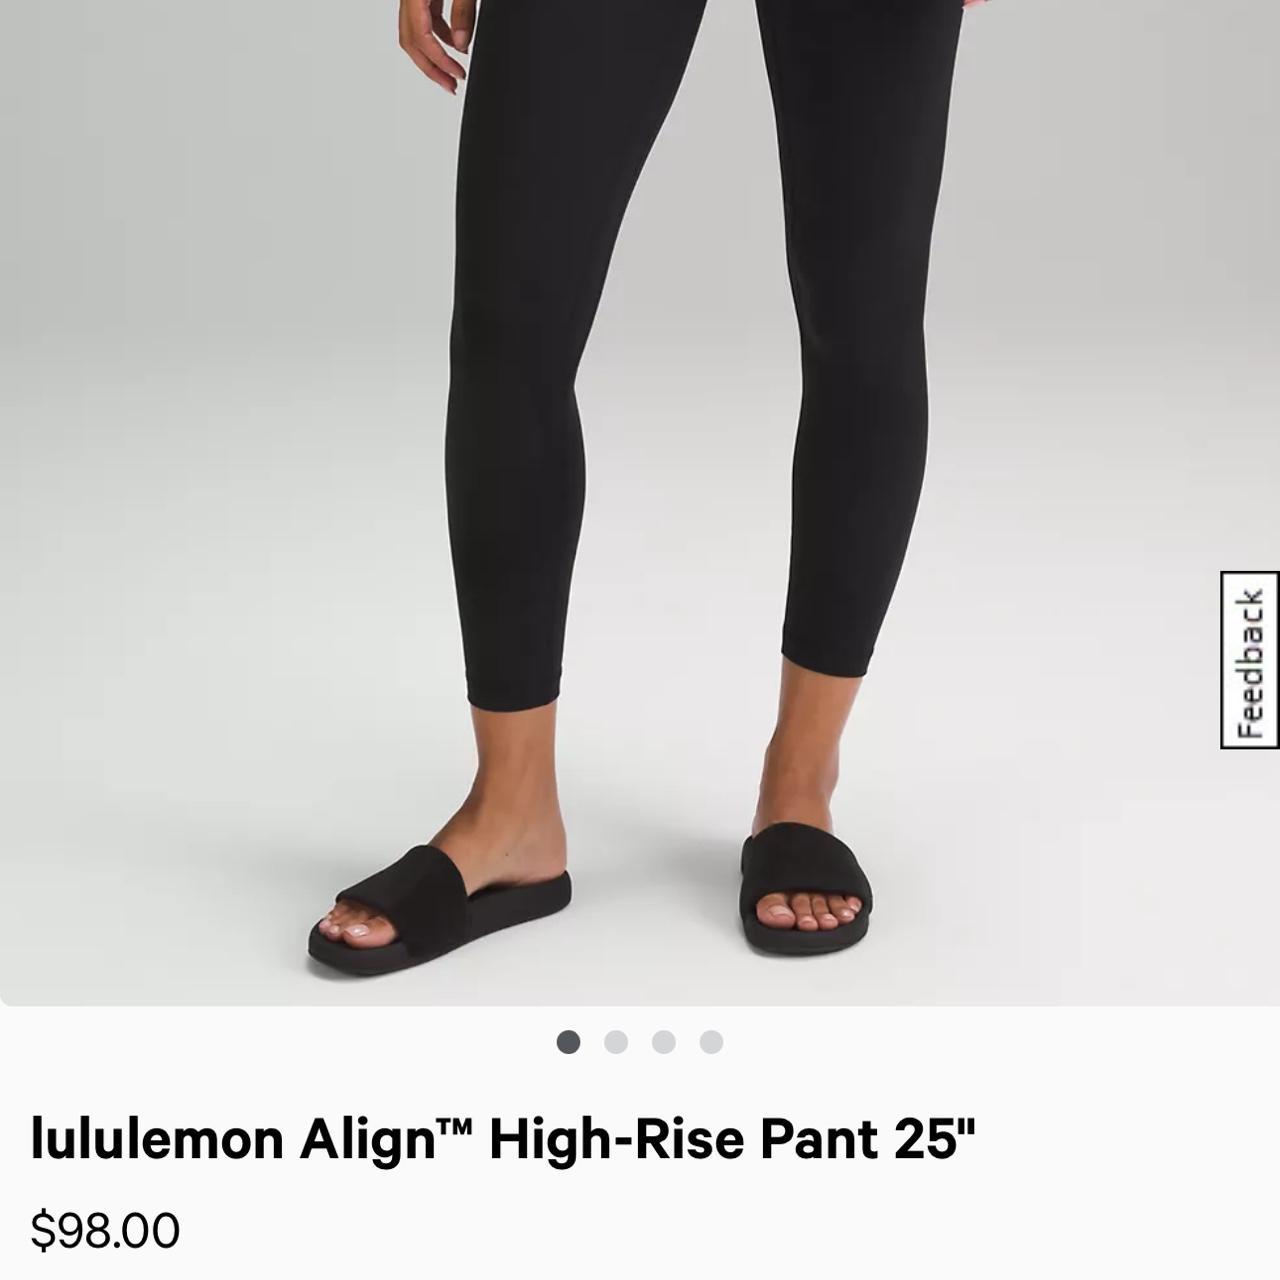 Lululemon align leggings 25” size 4 in black!!!, Very